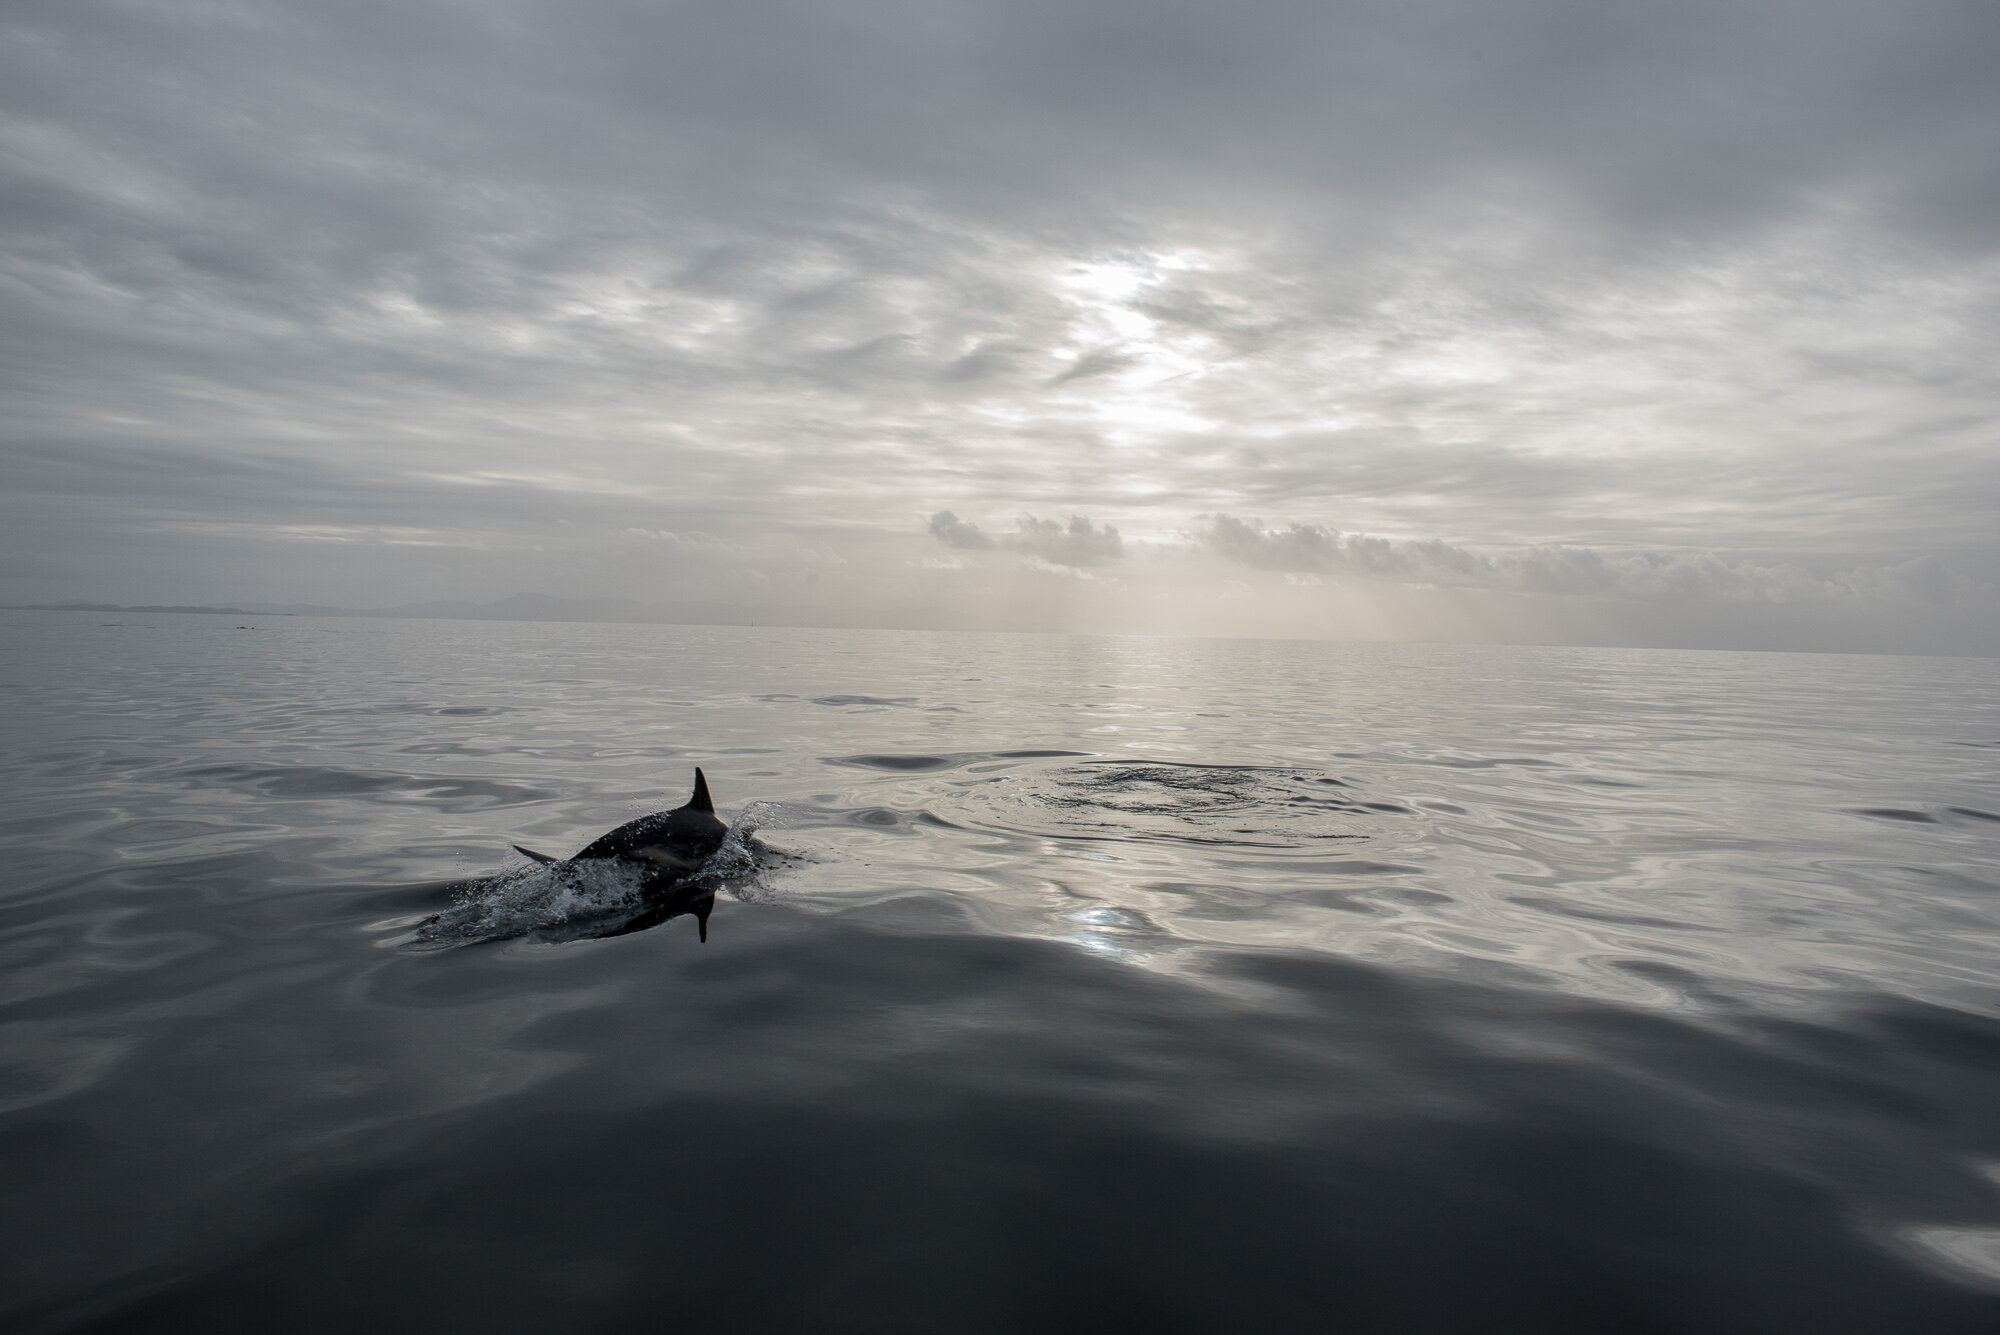 "Hebridean Dolphin" near the Shiant Isles, Scotland, 2019